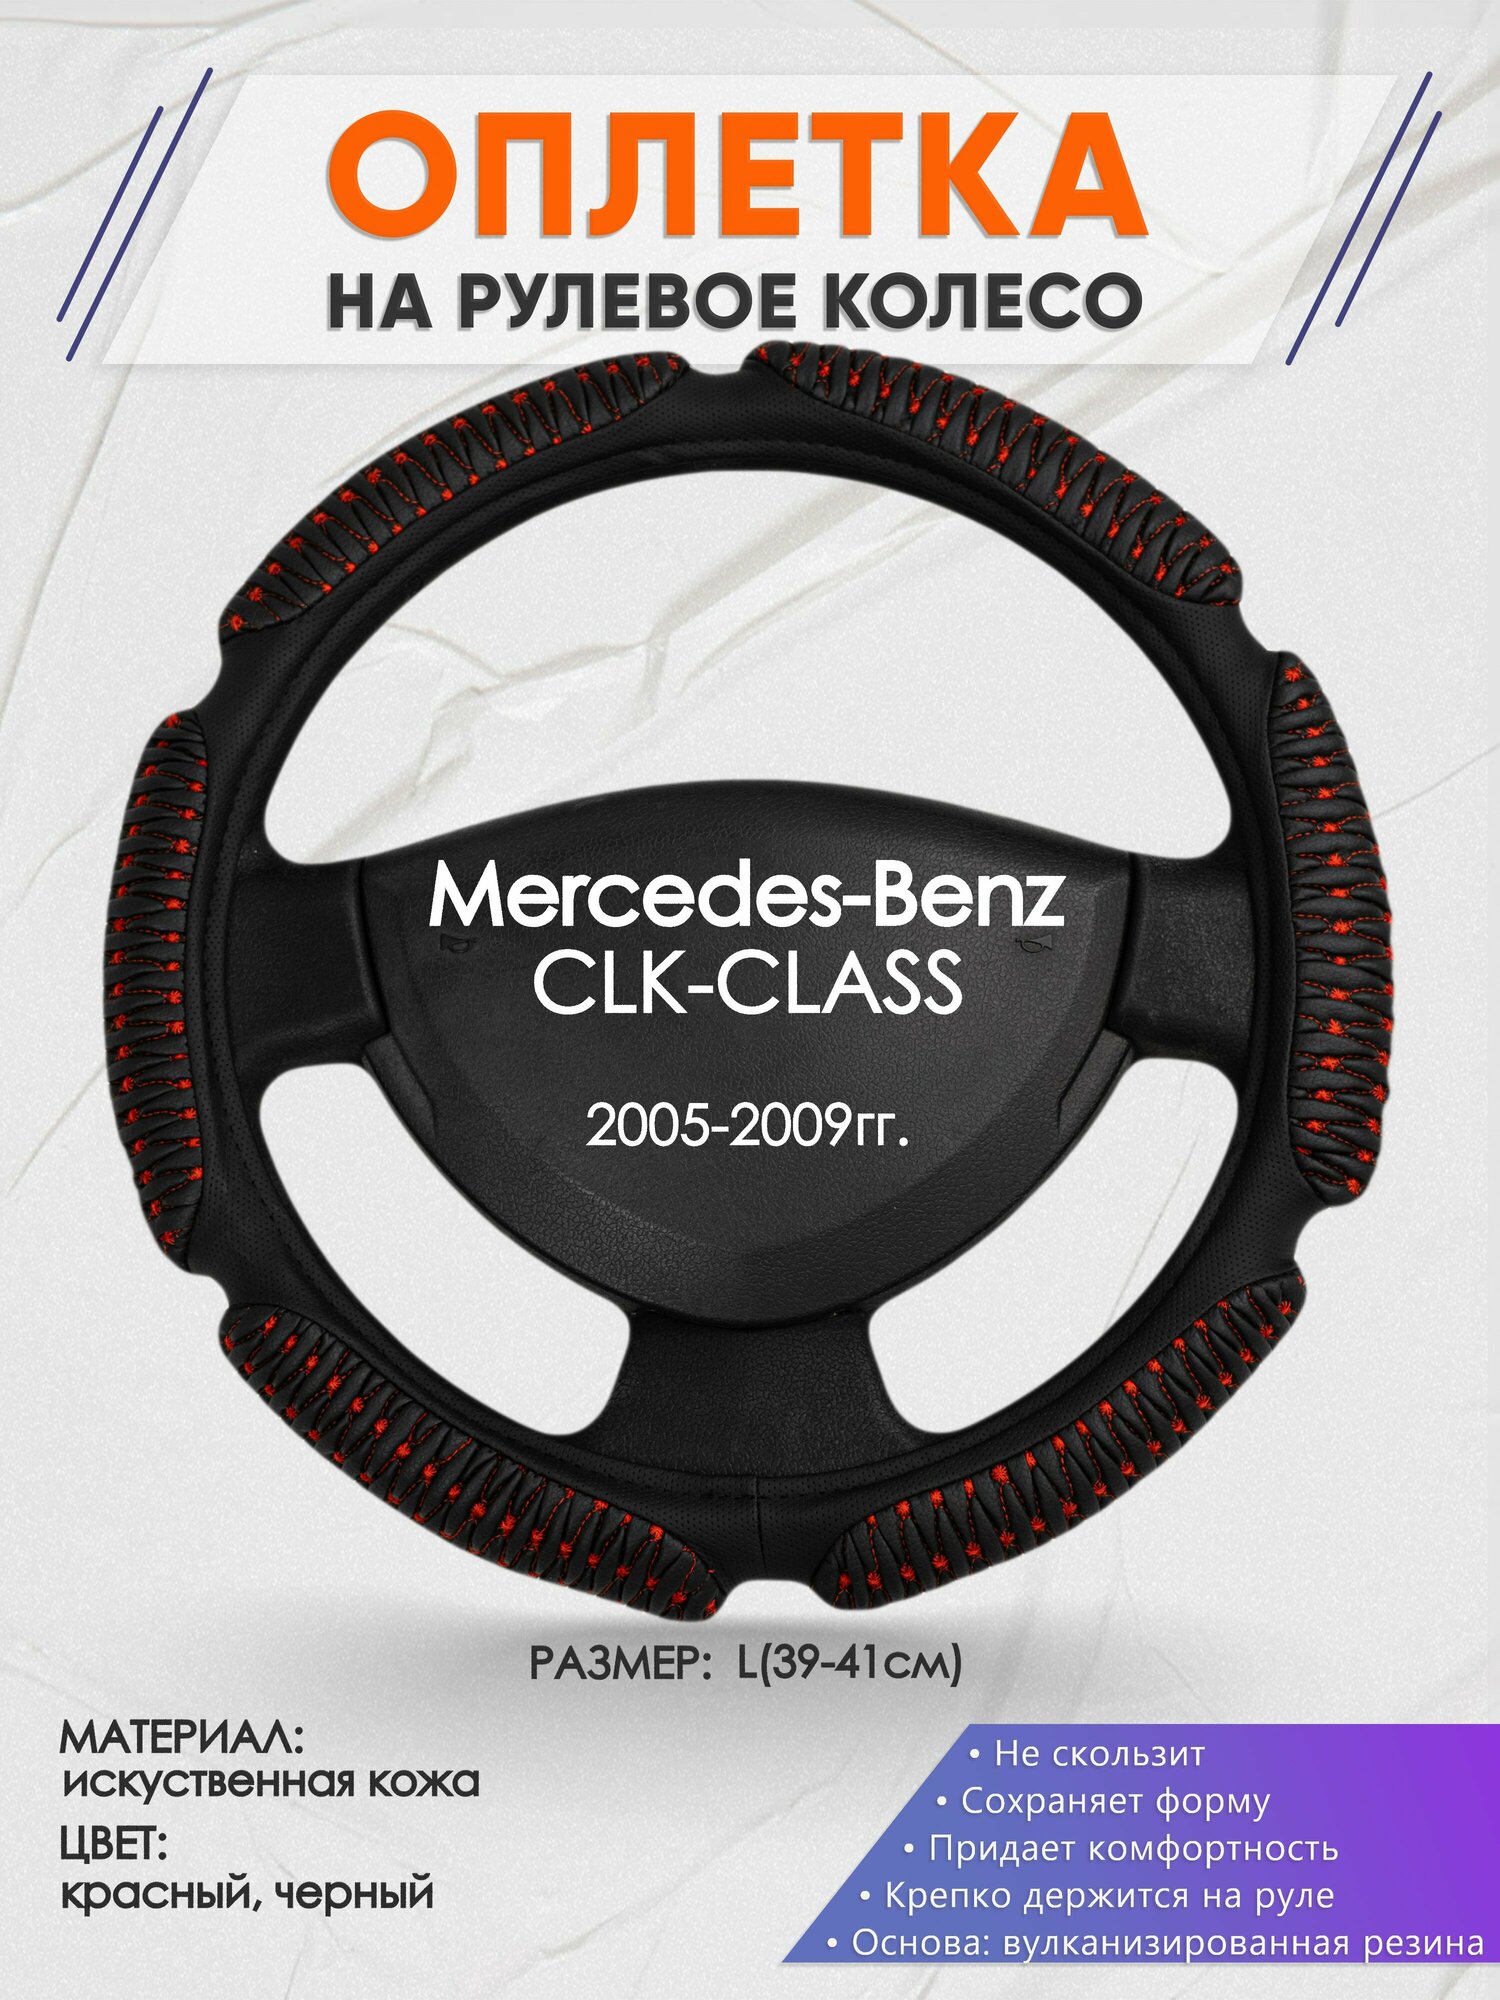 Оплетка на руль для Mercedes-Benz CLK-CLASS(Мерседес Бенц СЛК класс) 2005-2009, L(39-41см), Искусственная кожа 01